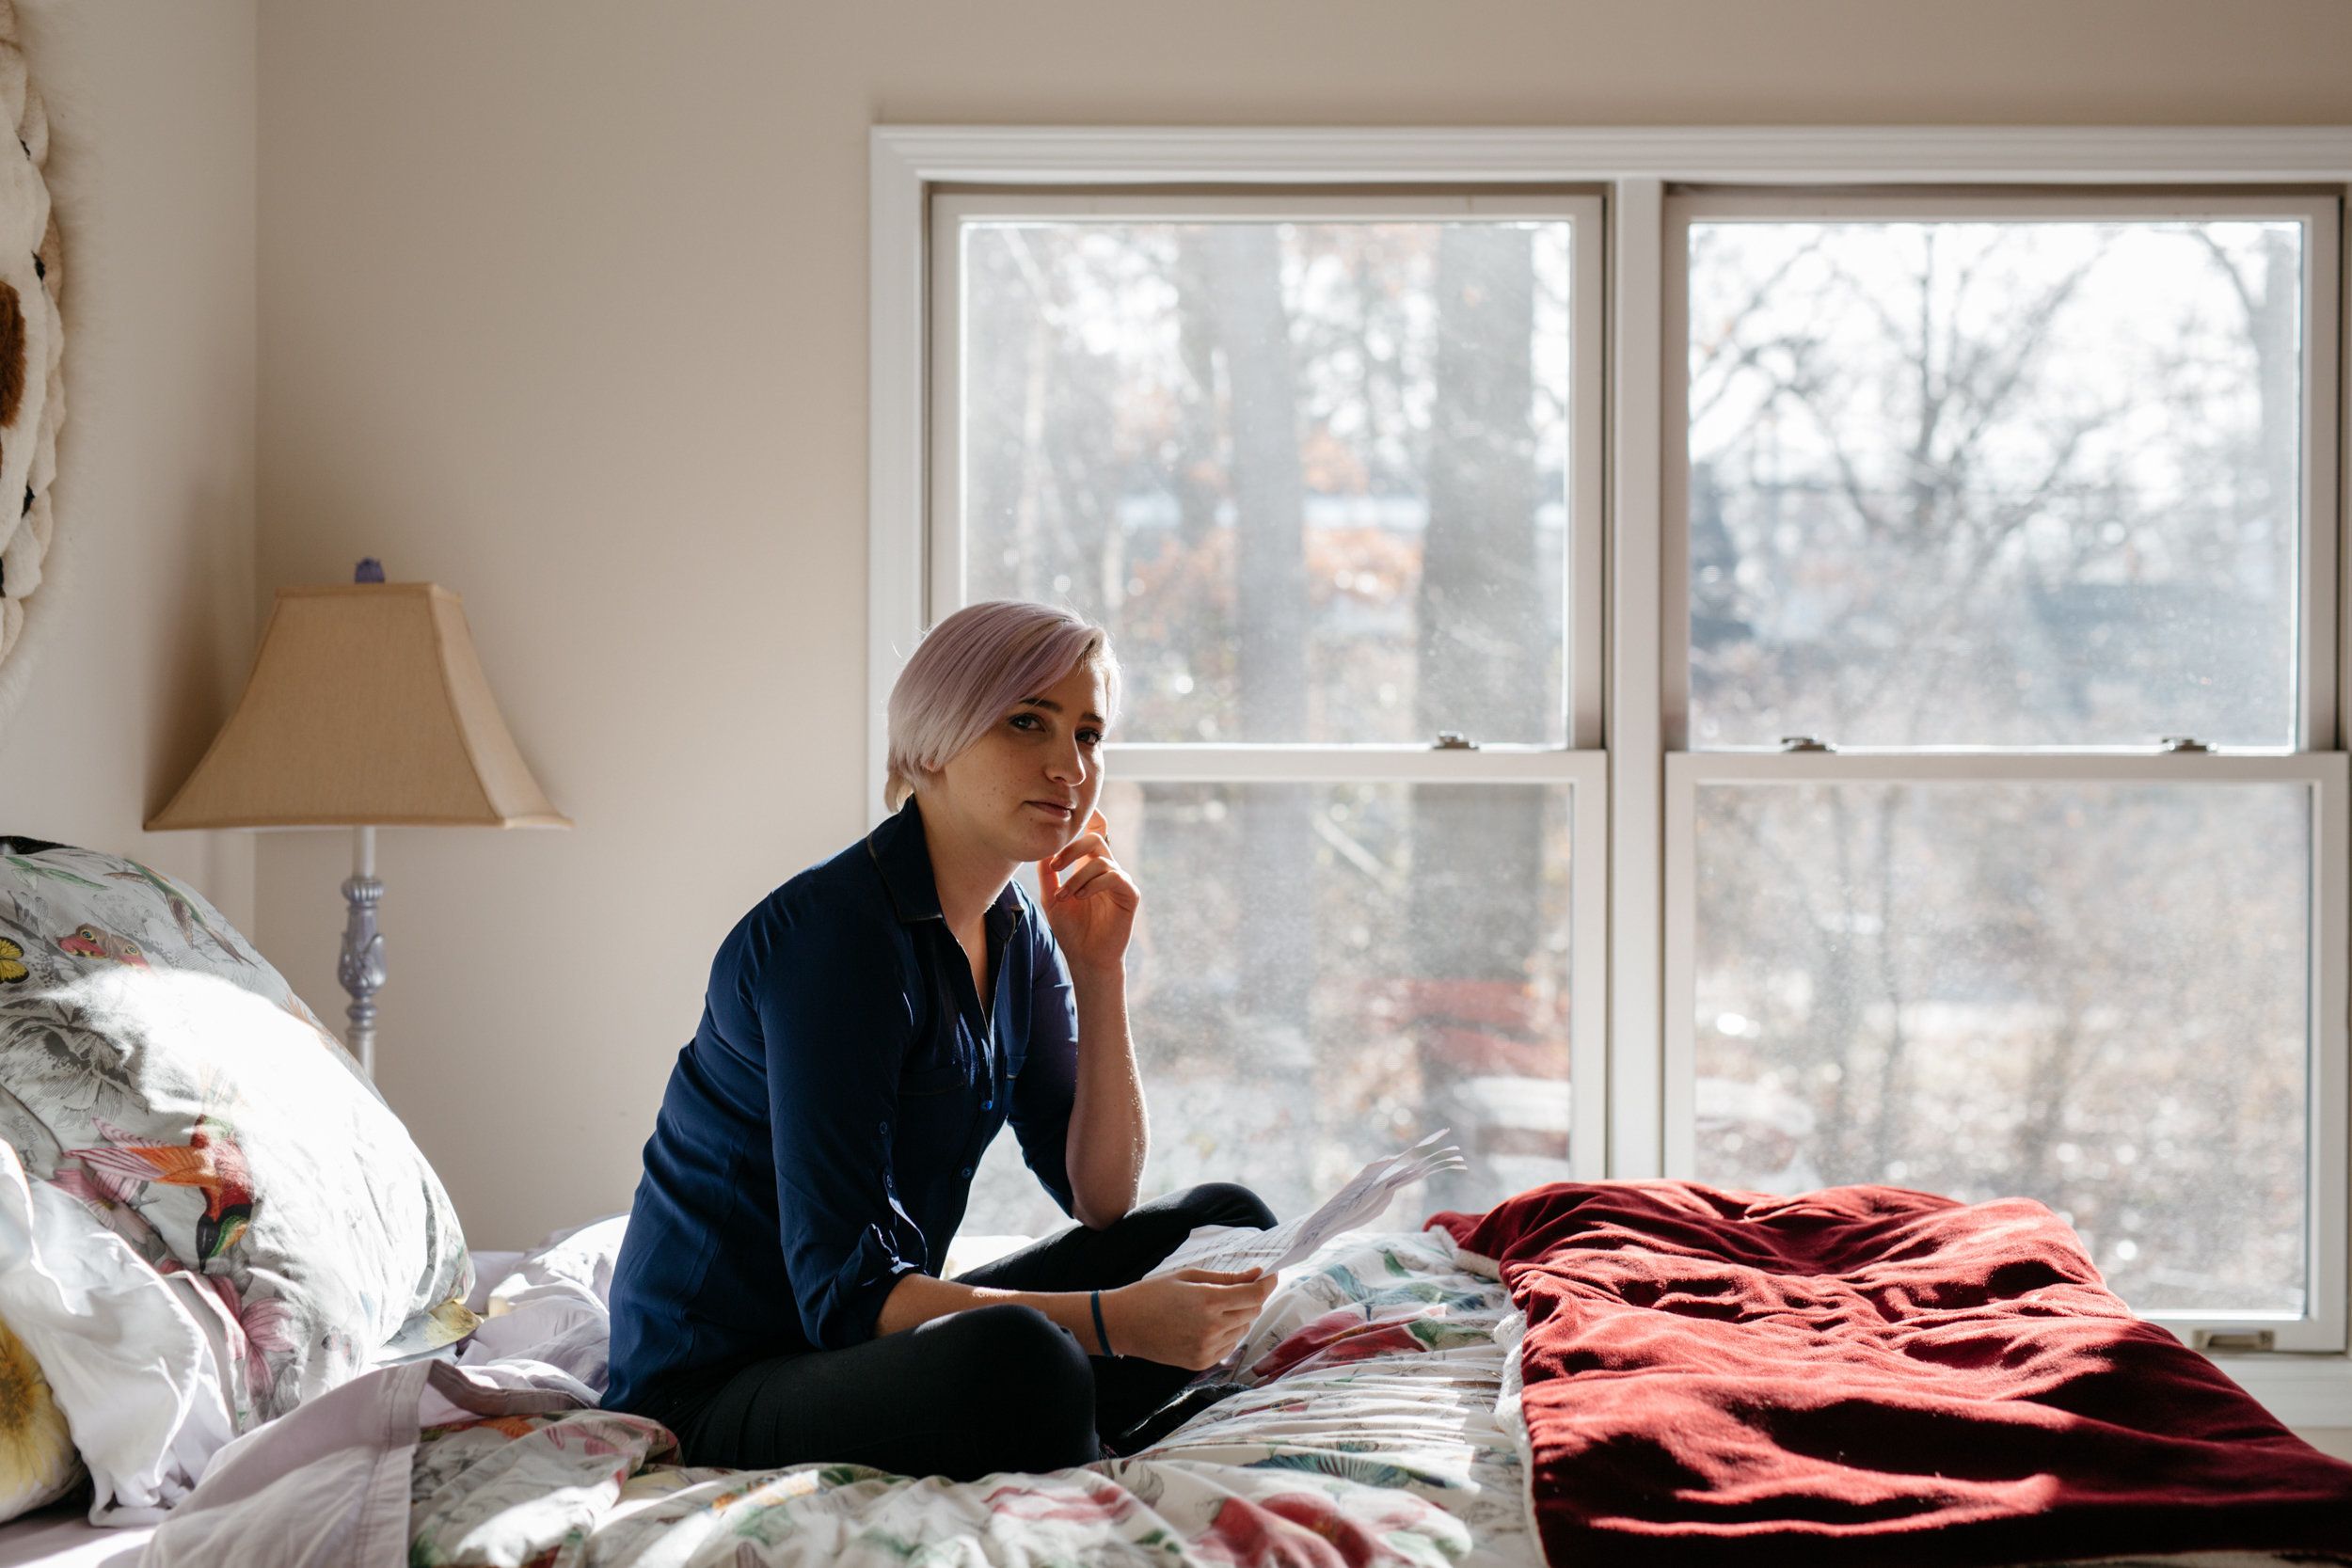  Amanda Thomashow, 29, posa para um retrato na cama onde ela originalmente escreveu sua declaração de impacto sobre Nassar há um ano 